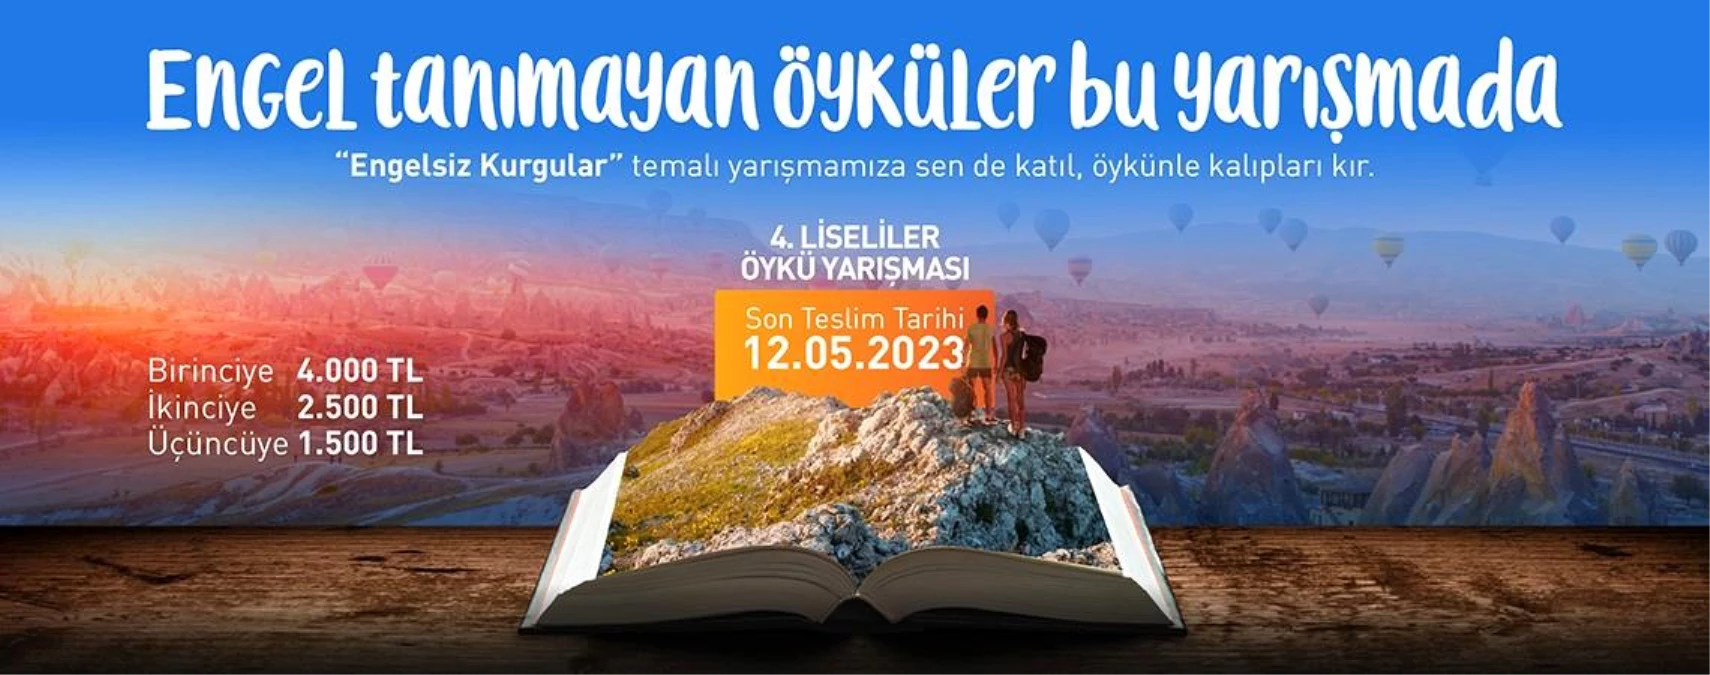 Kapadokya Üniversitesi Engelsiz Kurgular Konulu Öykü Yazma Yarışması Başlıyor